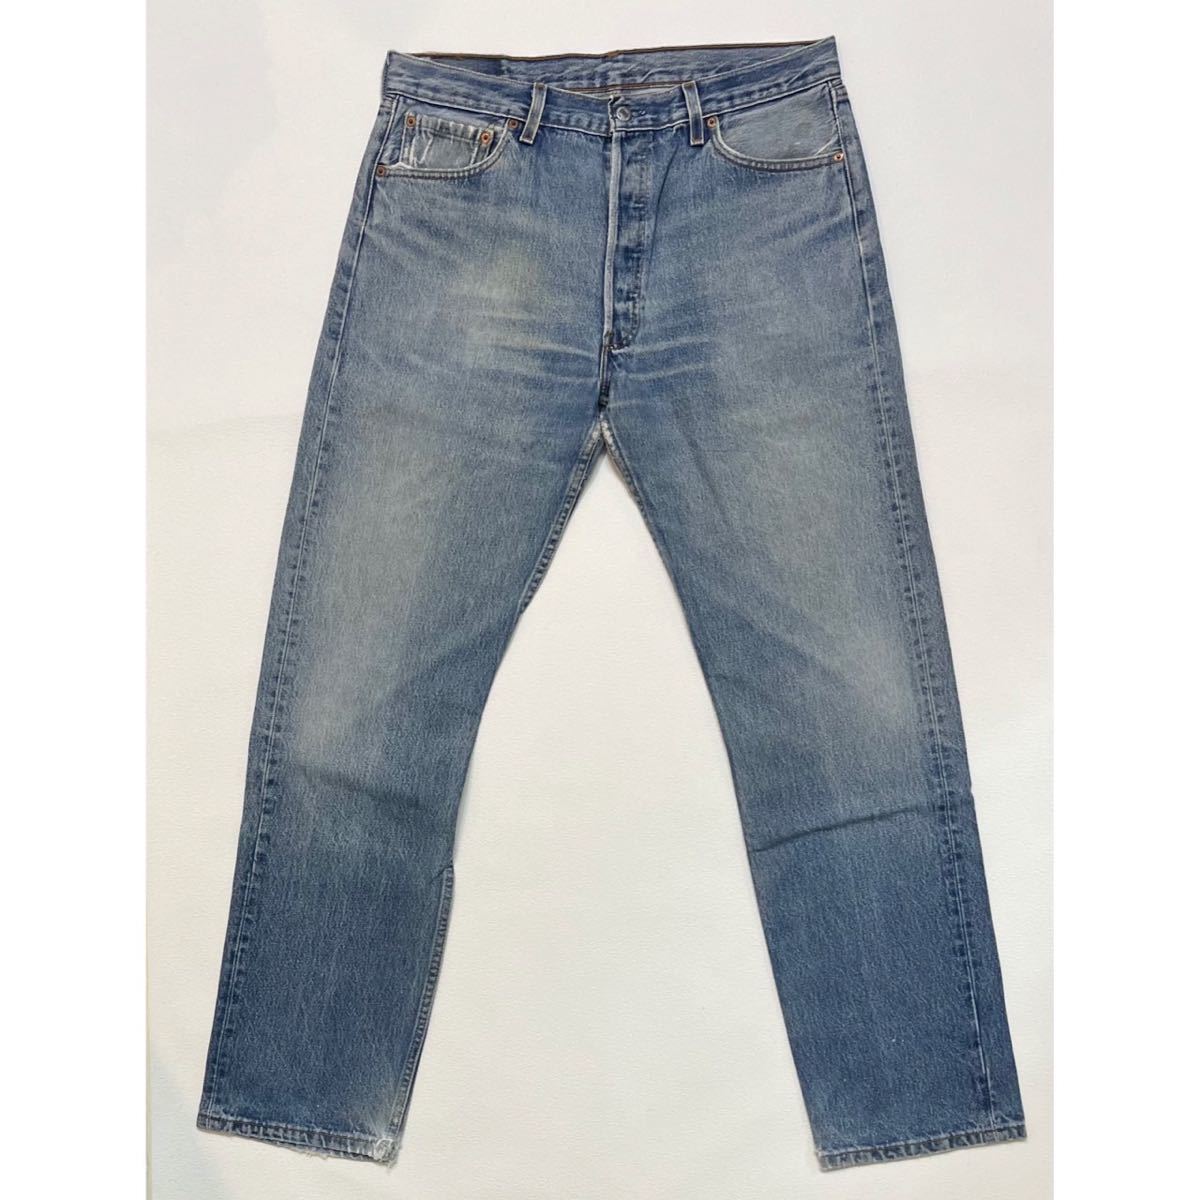 h108 90 年代 アメリカ 製 Levi's 501 W36 × L34 デニム パンツ USA リーバイス 90s vintage ビンテージ denim pants_画像1